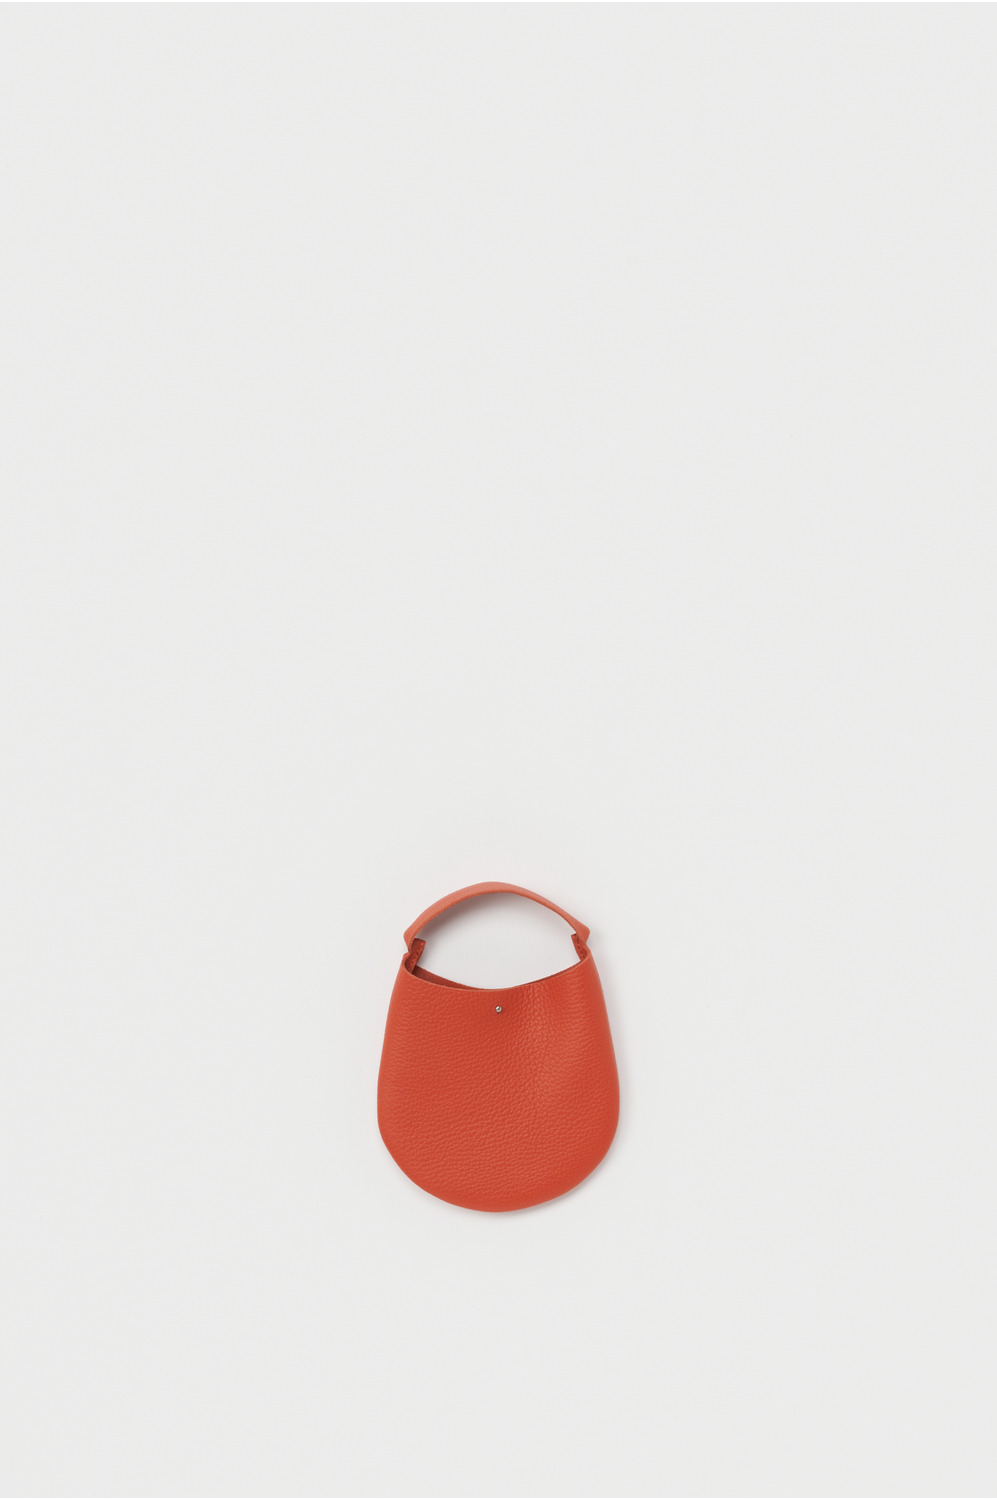 one piece bag small 詳細画像 copper orange 1